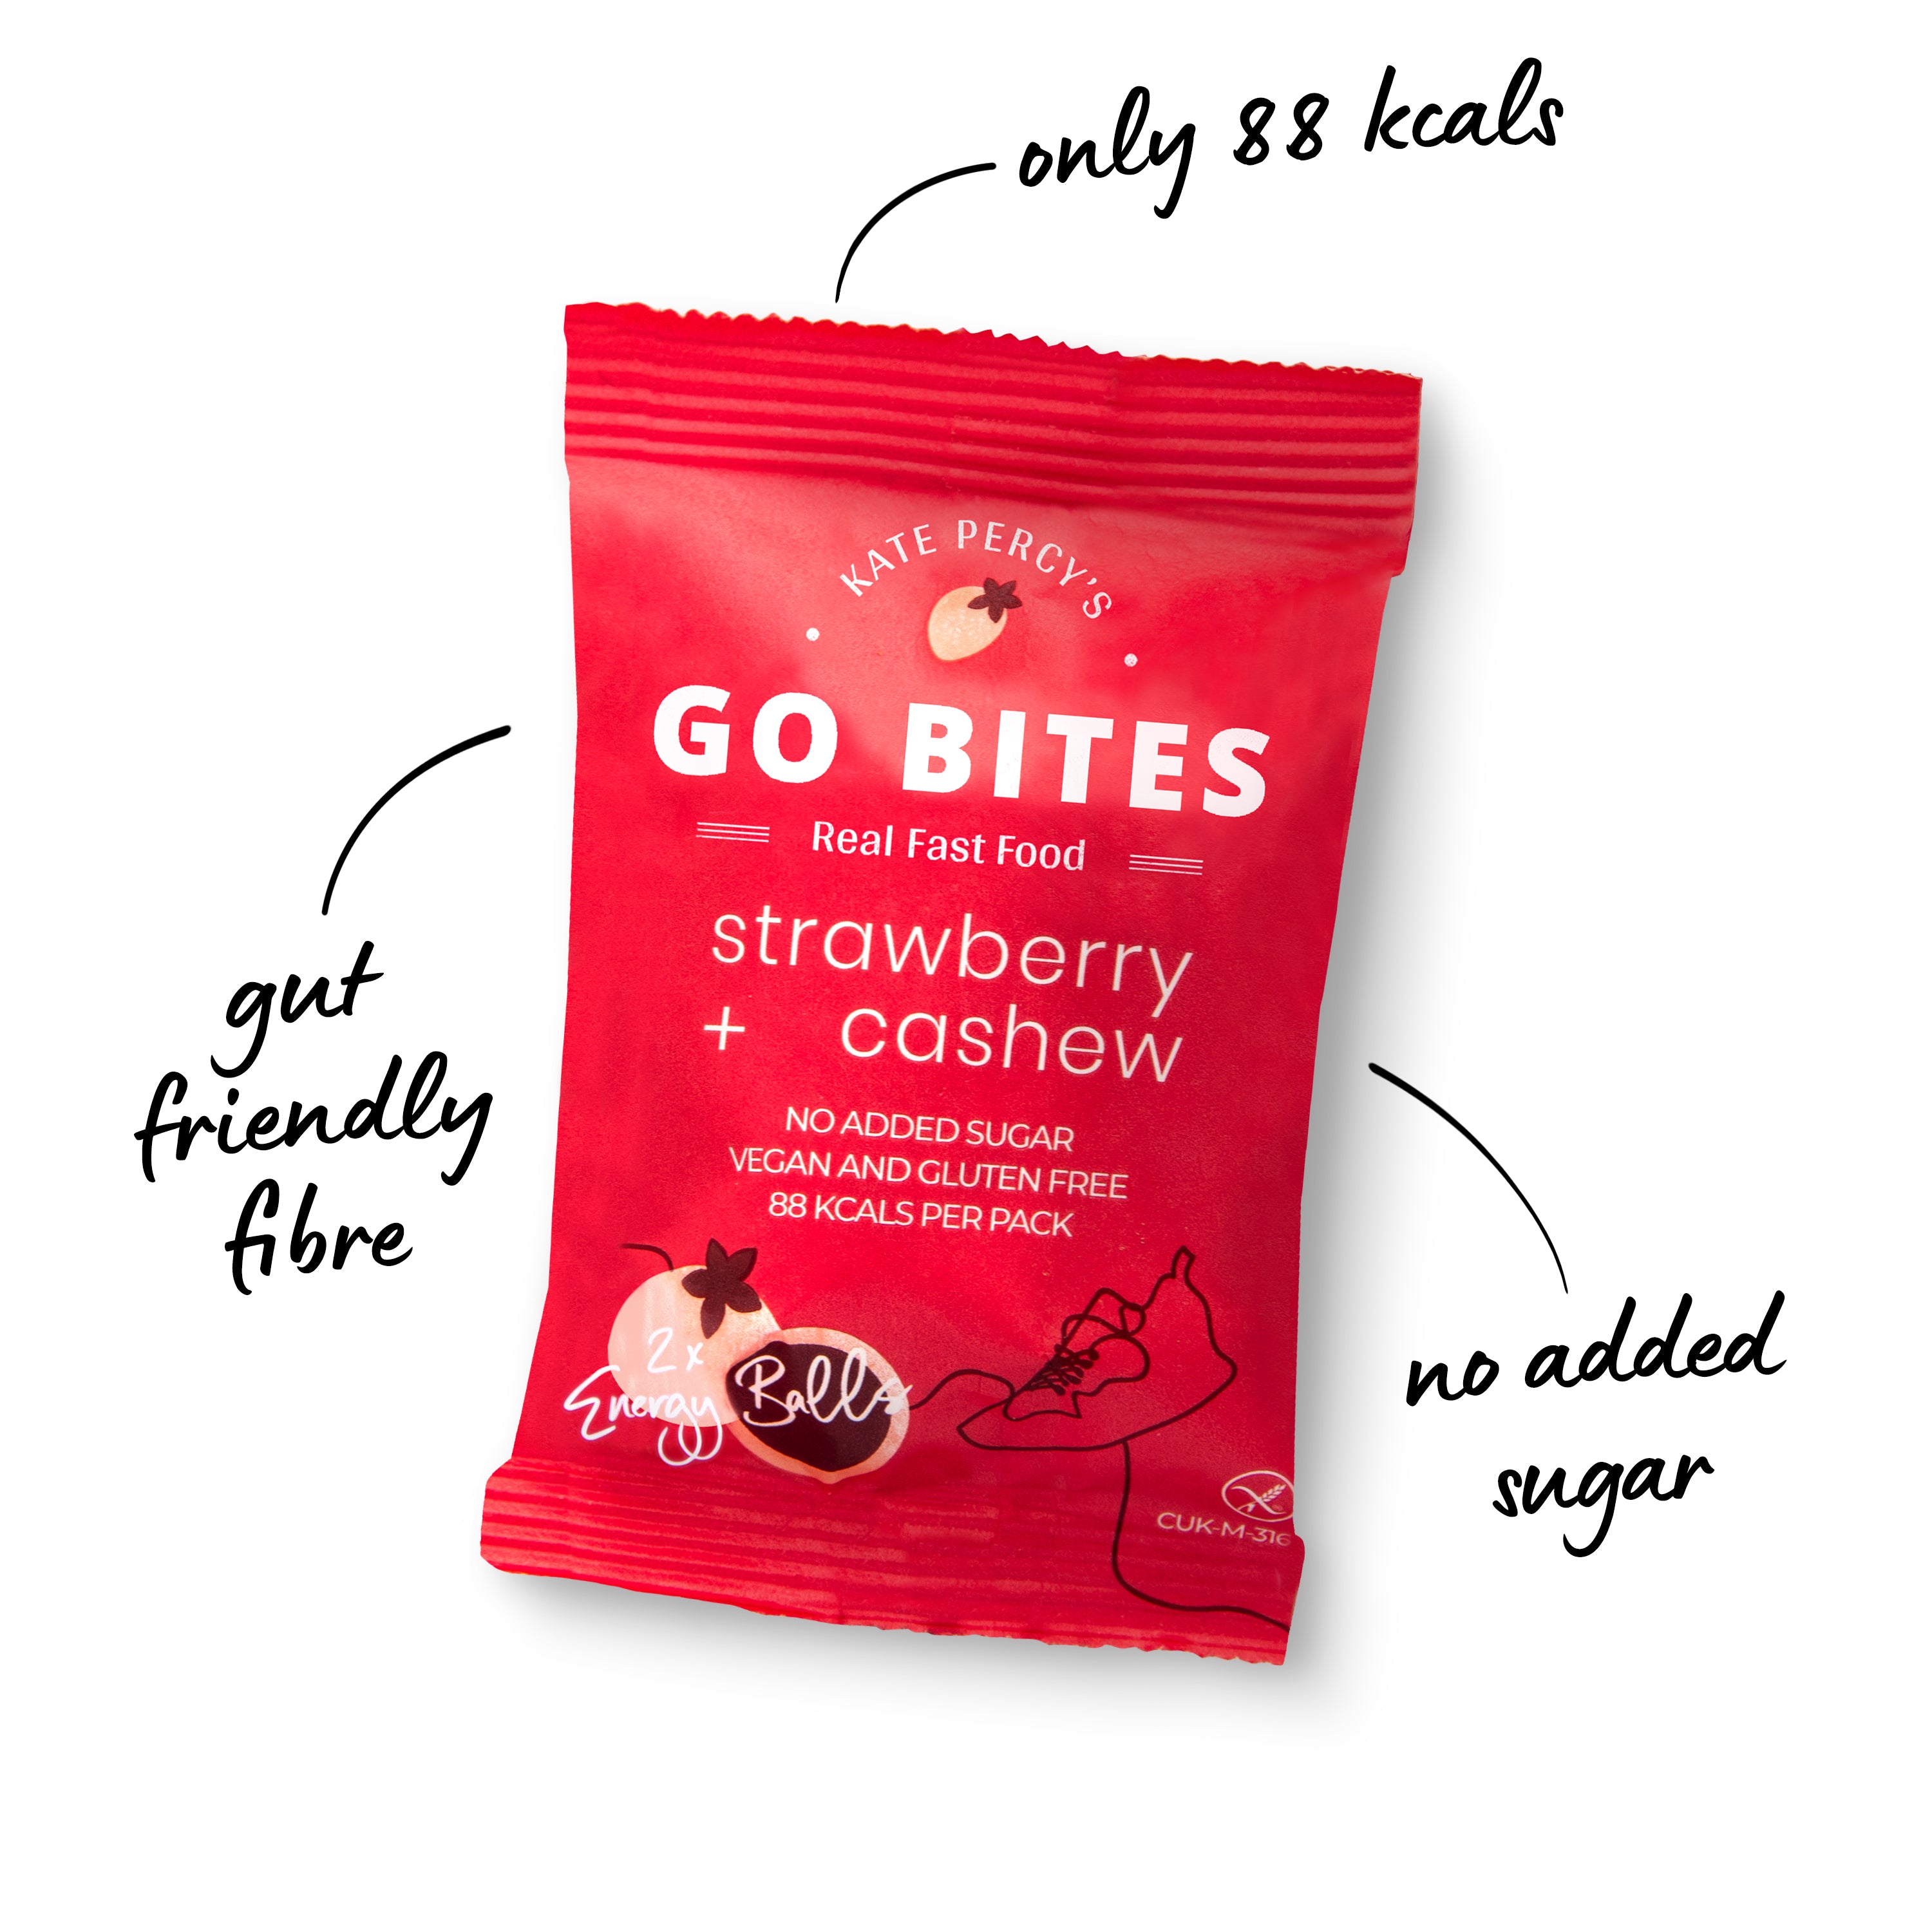 Kate Percy's GO BITES® Strawberry + Cashew